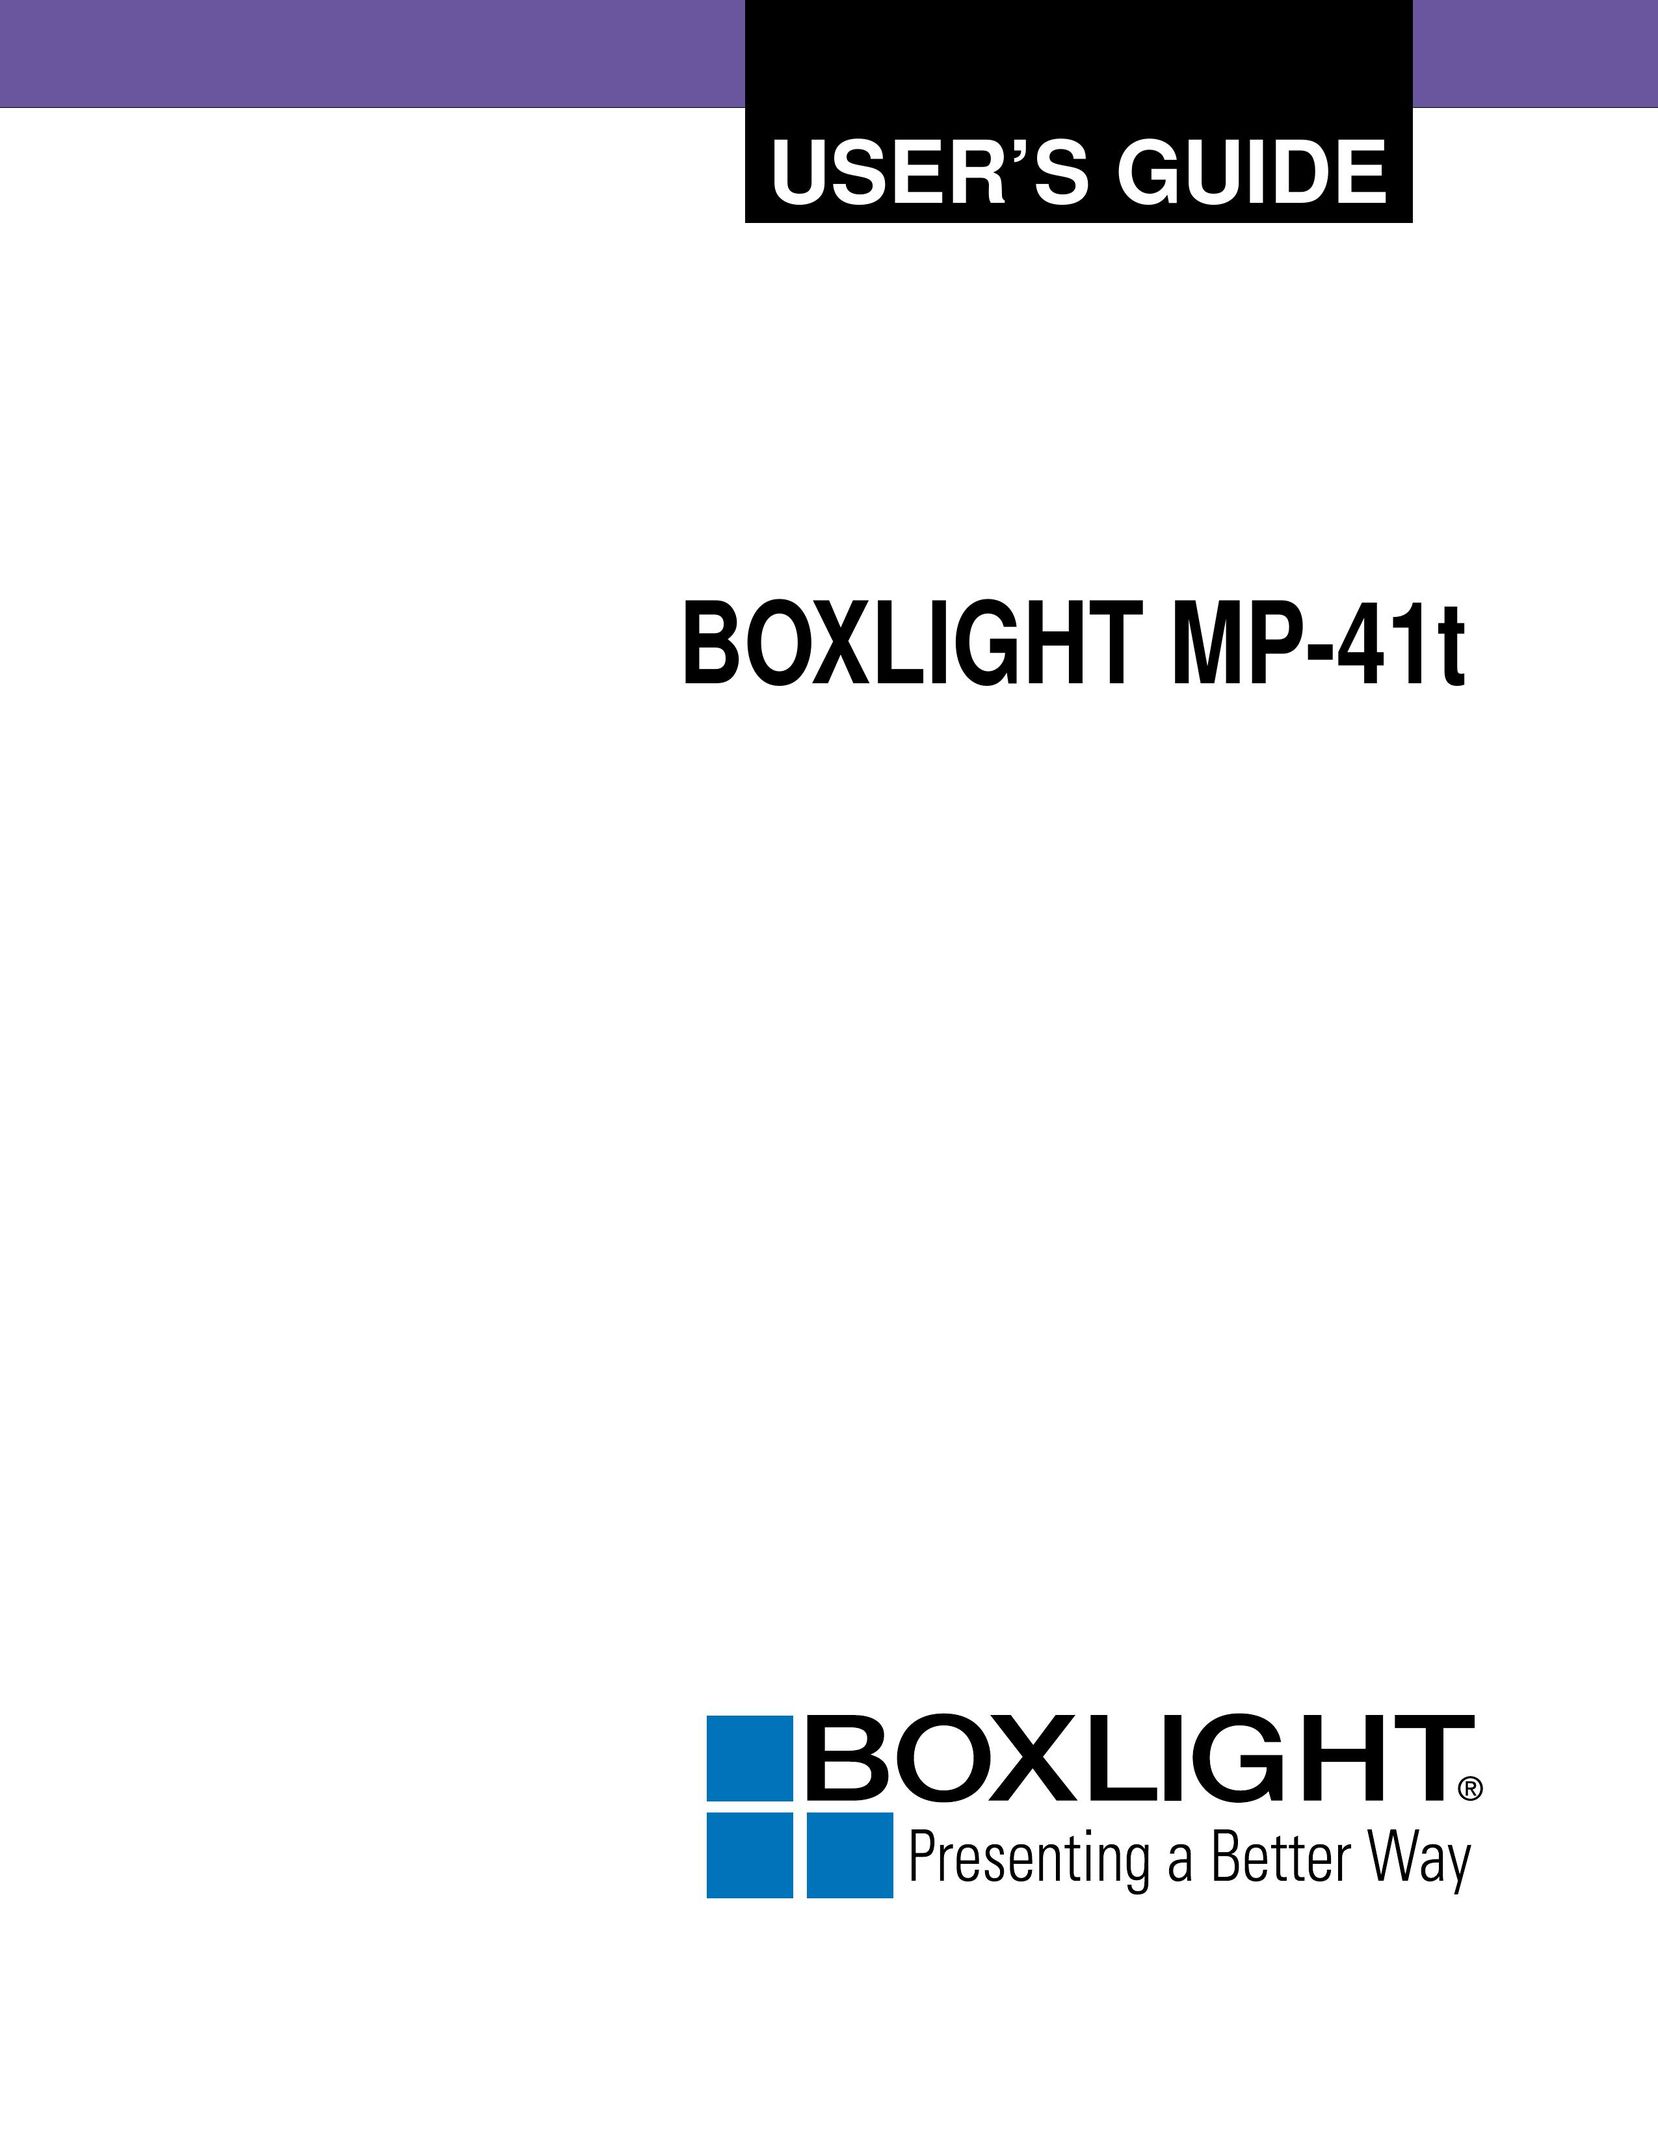 BOXLIGHT MP-41T Projector User Manual